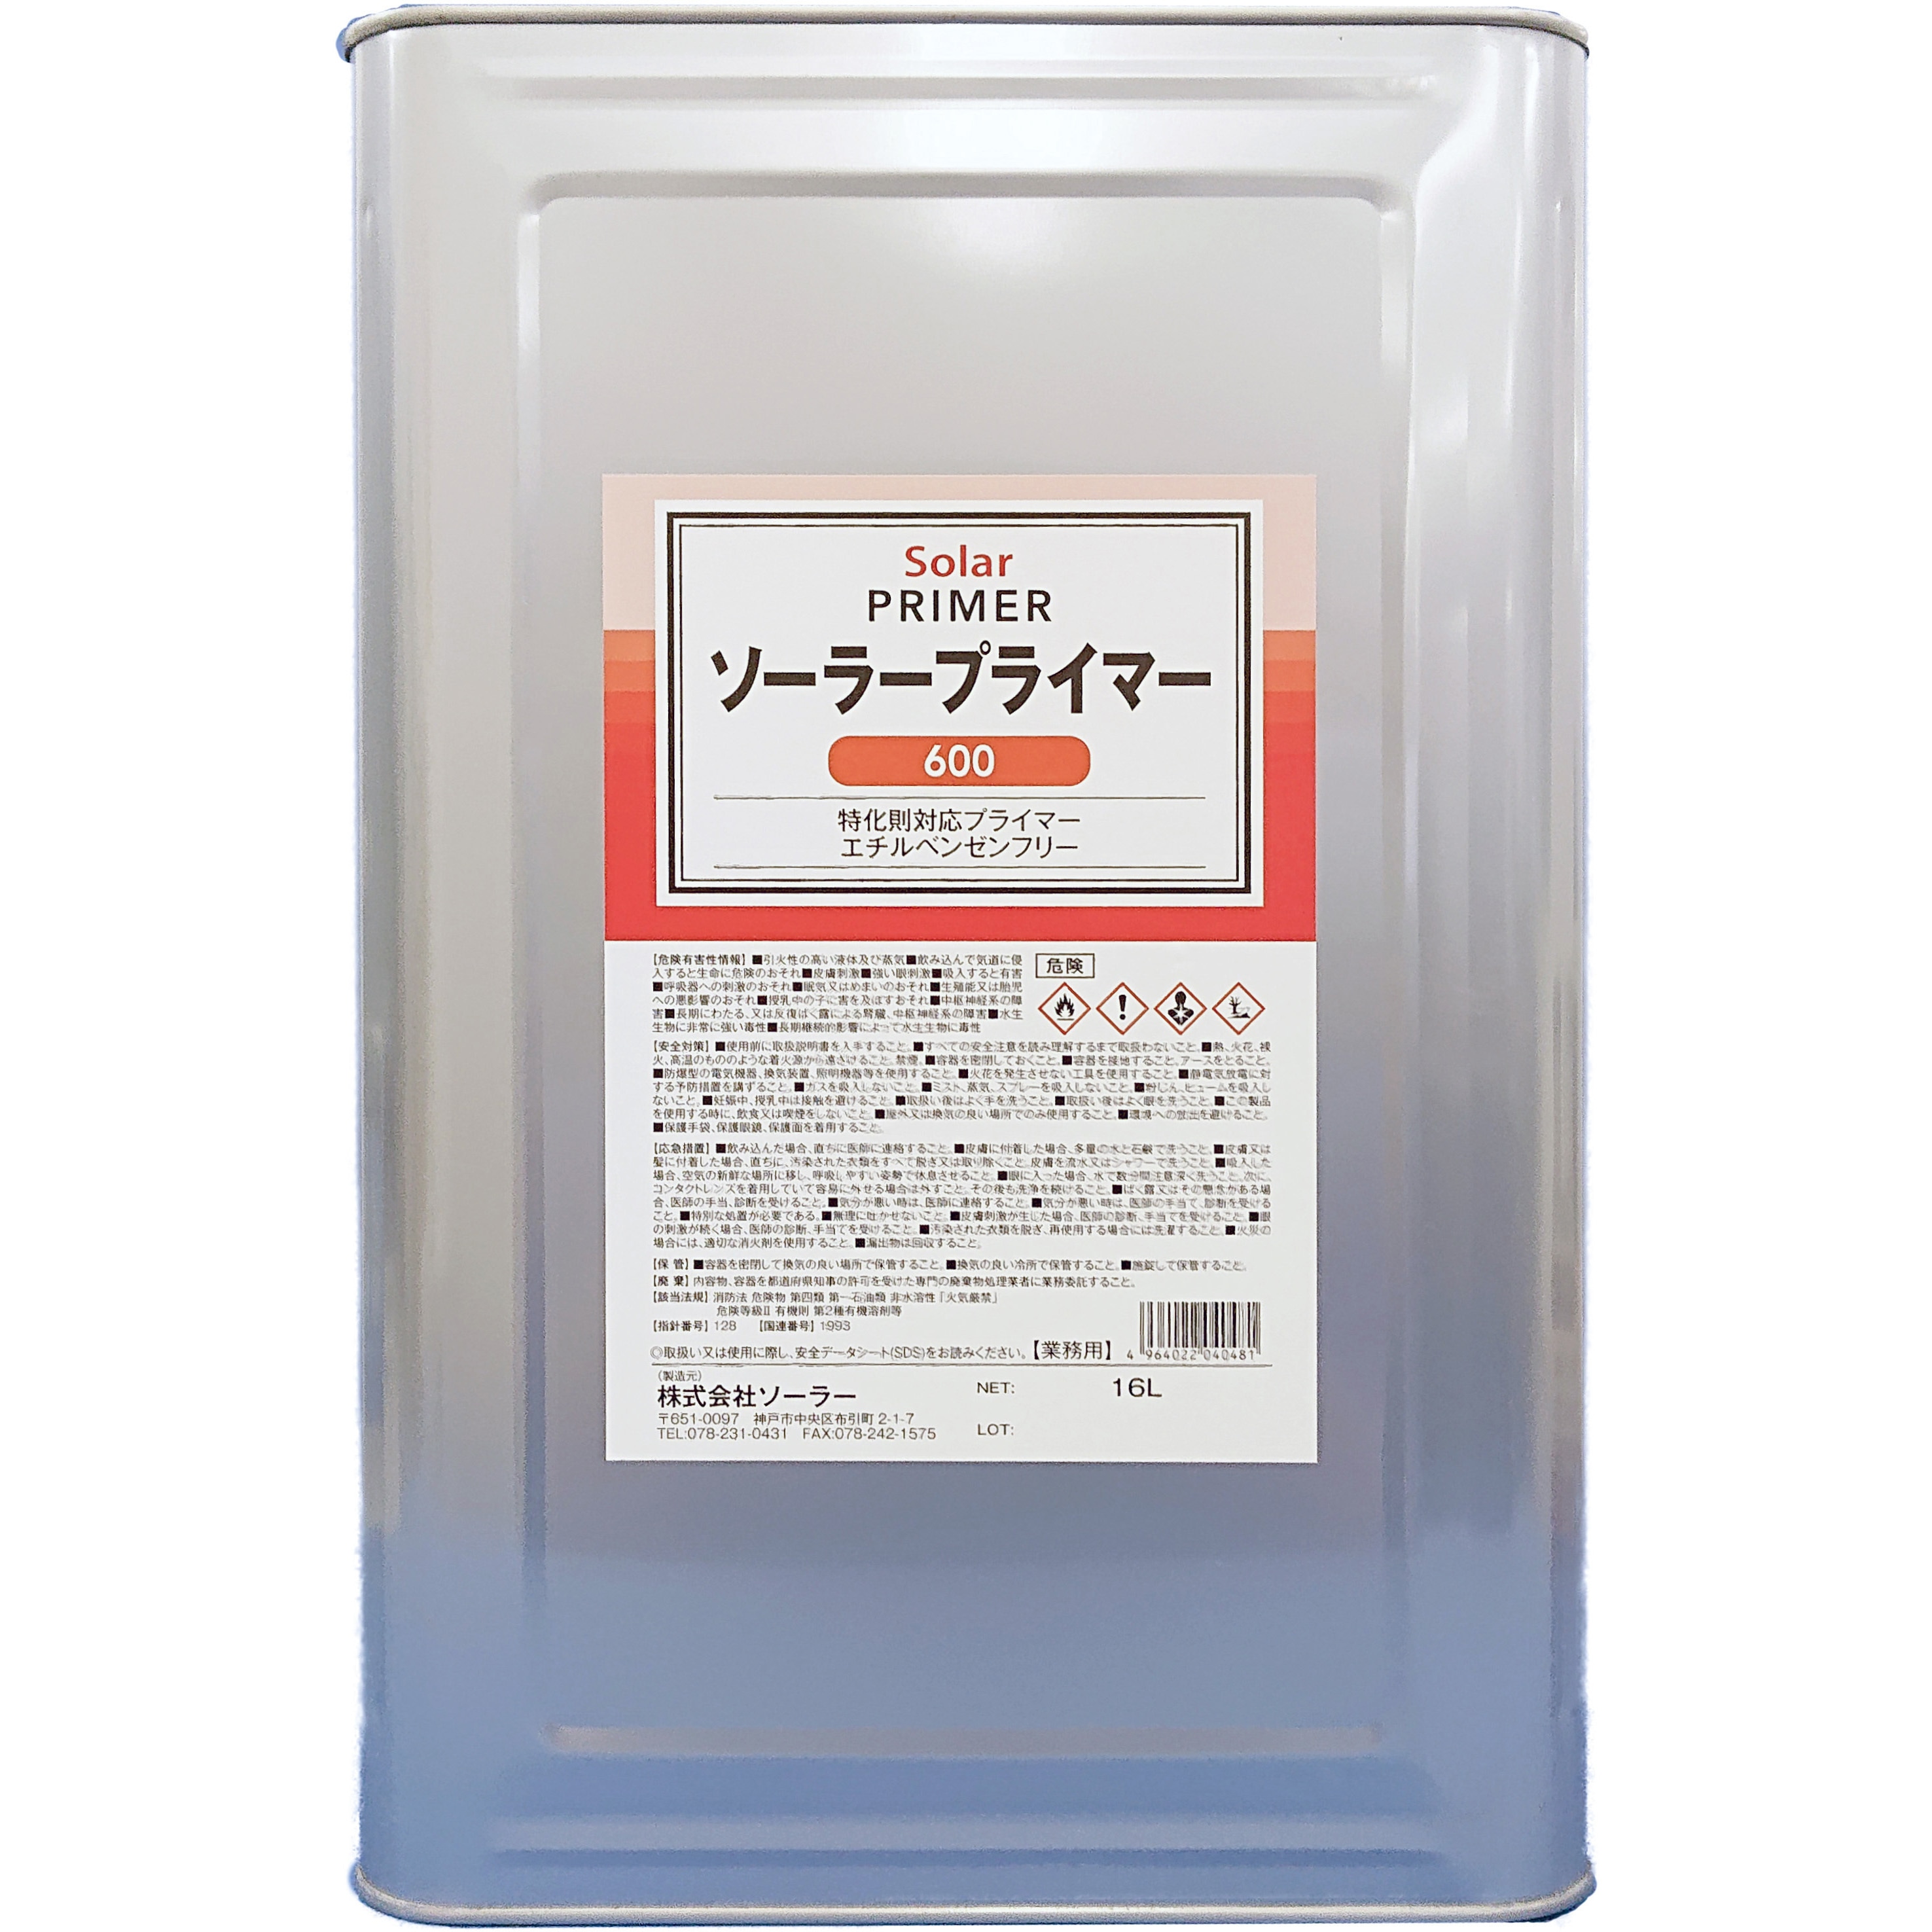 プライマー600 1缶(16L) ソーラー 【通販サイトMonotaRO】